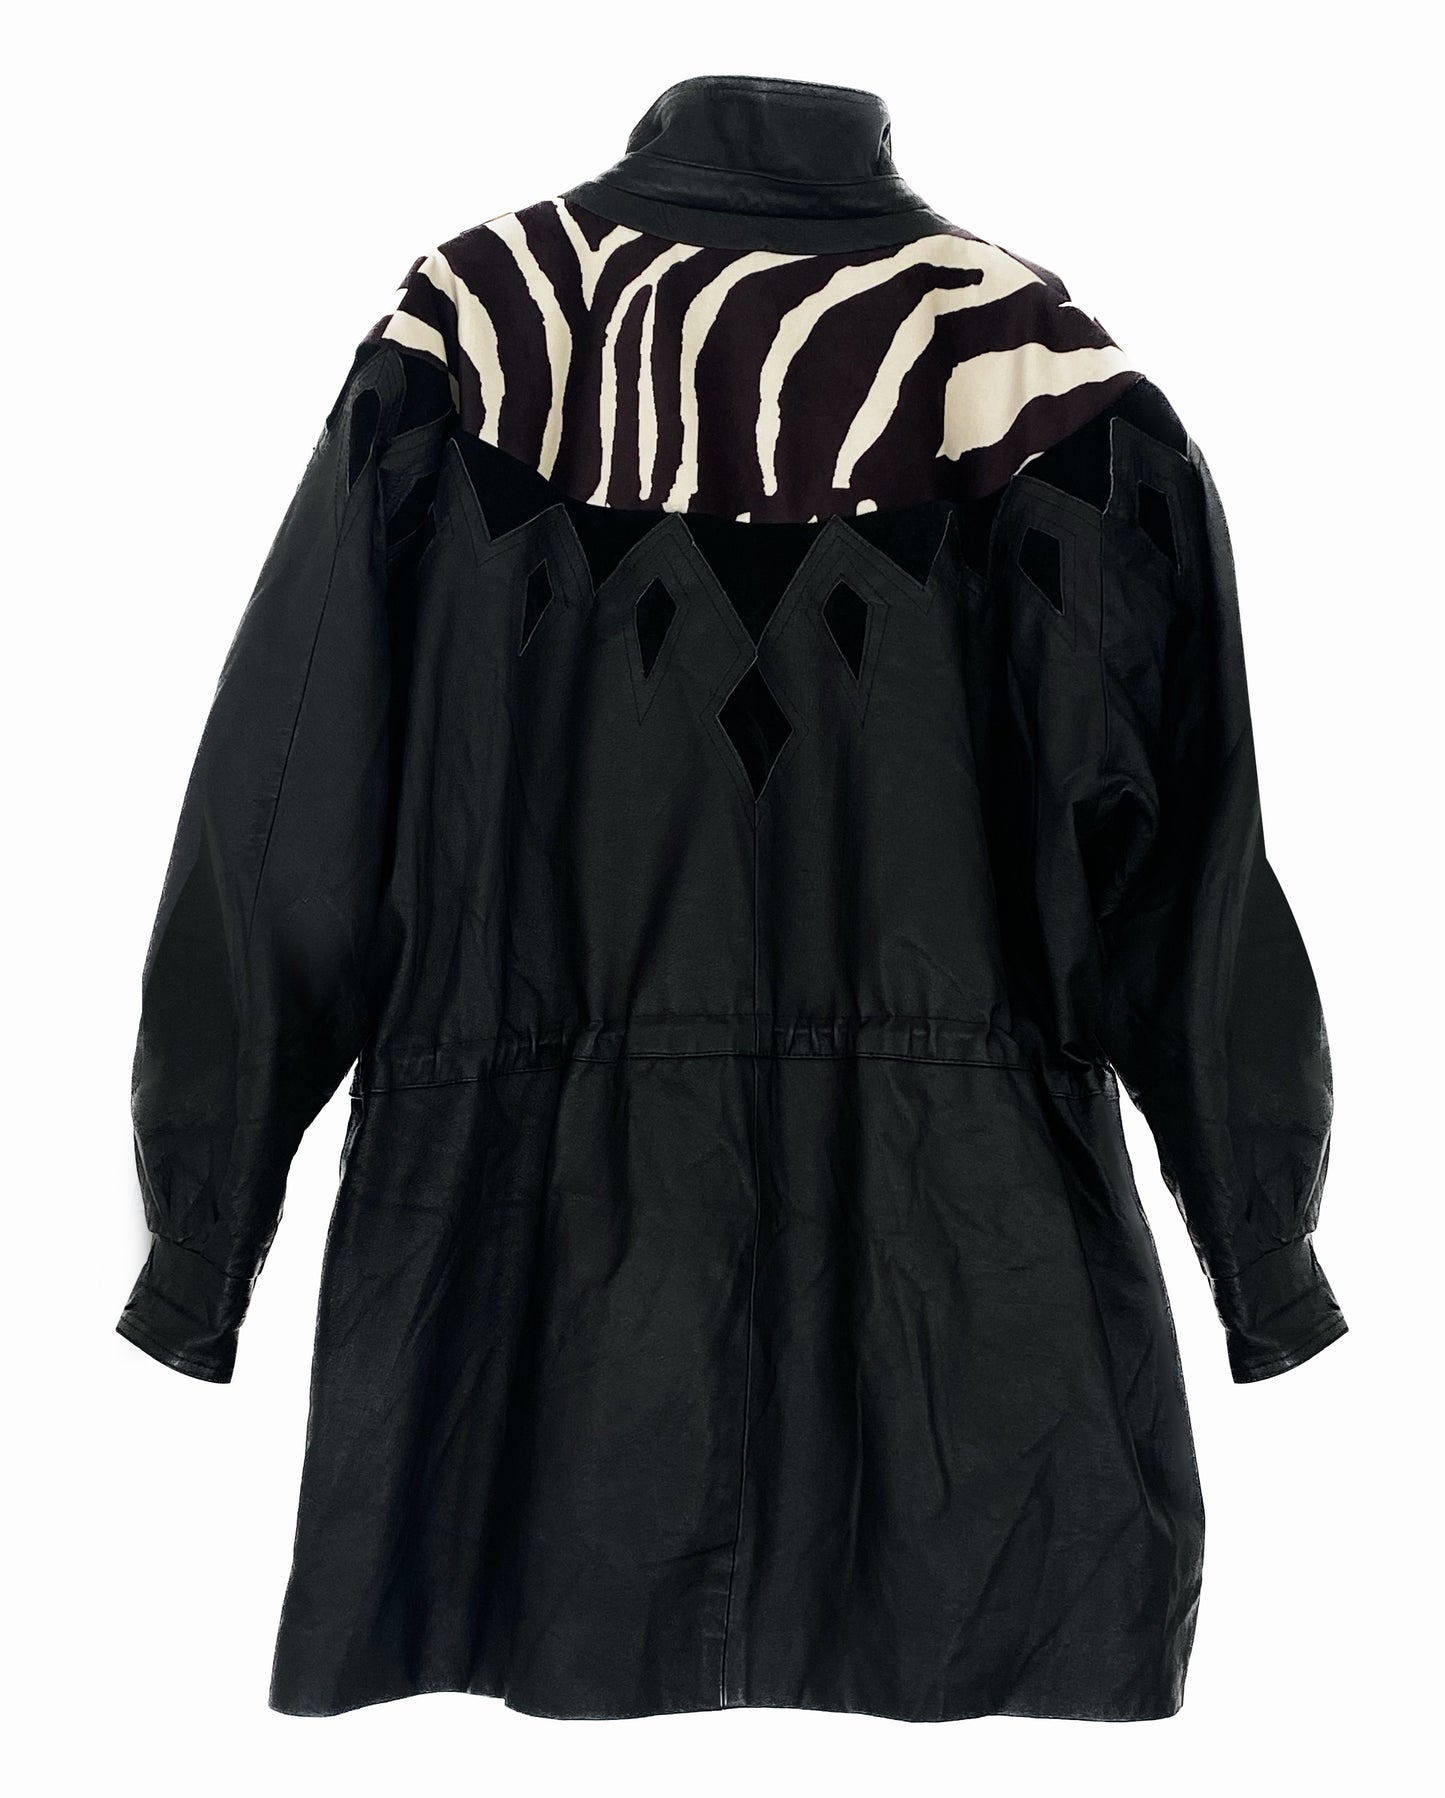 Leather Jacket Zebra